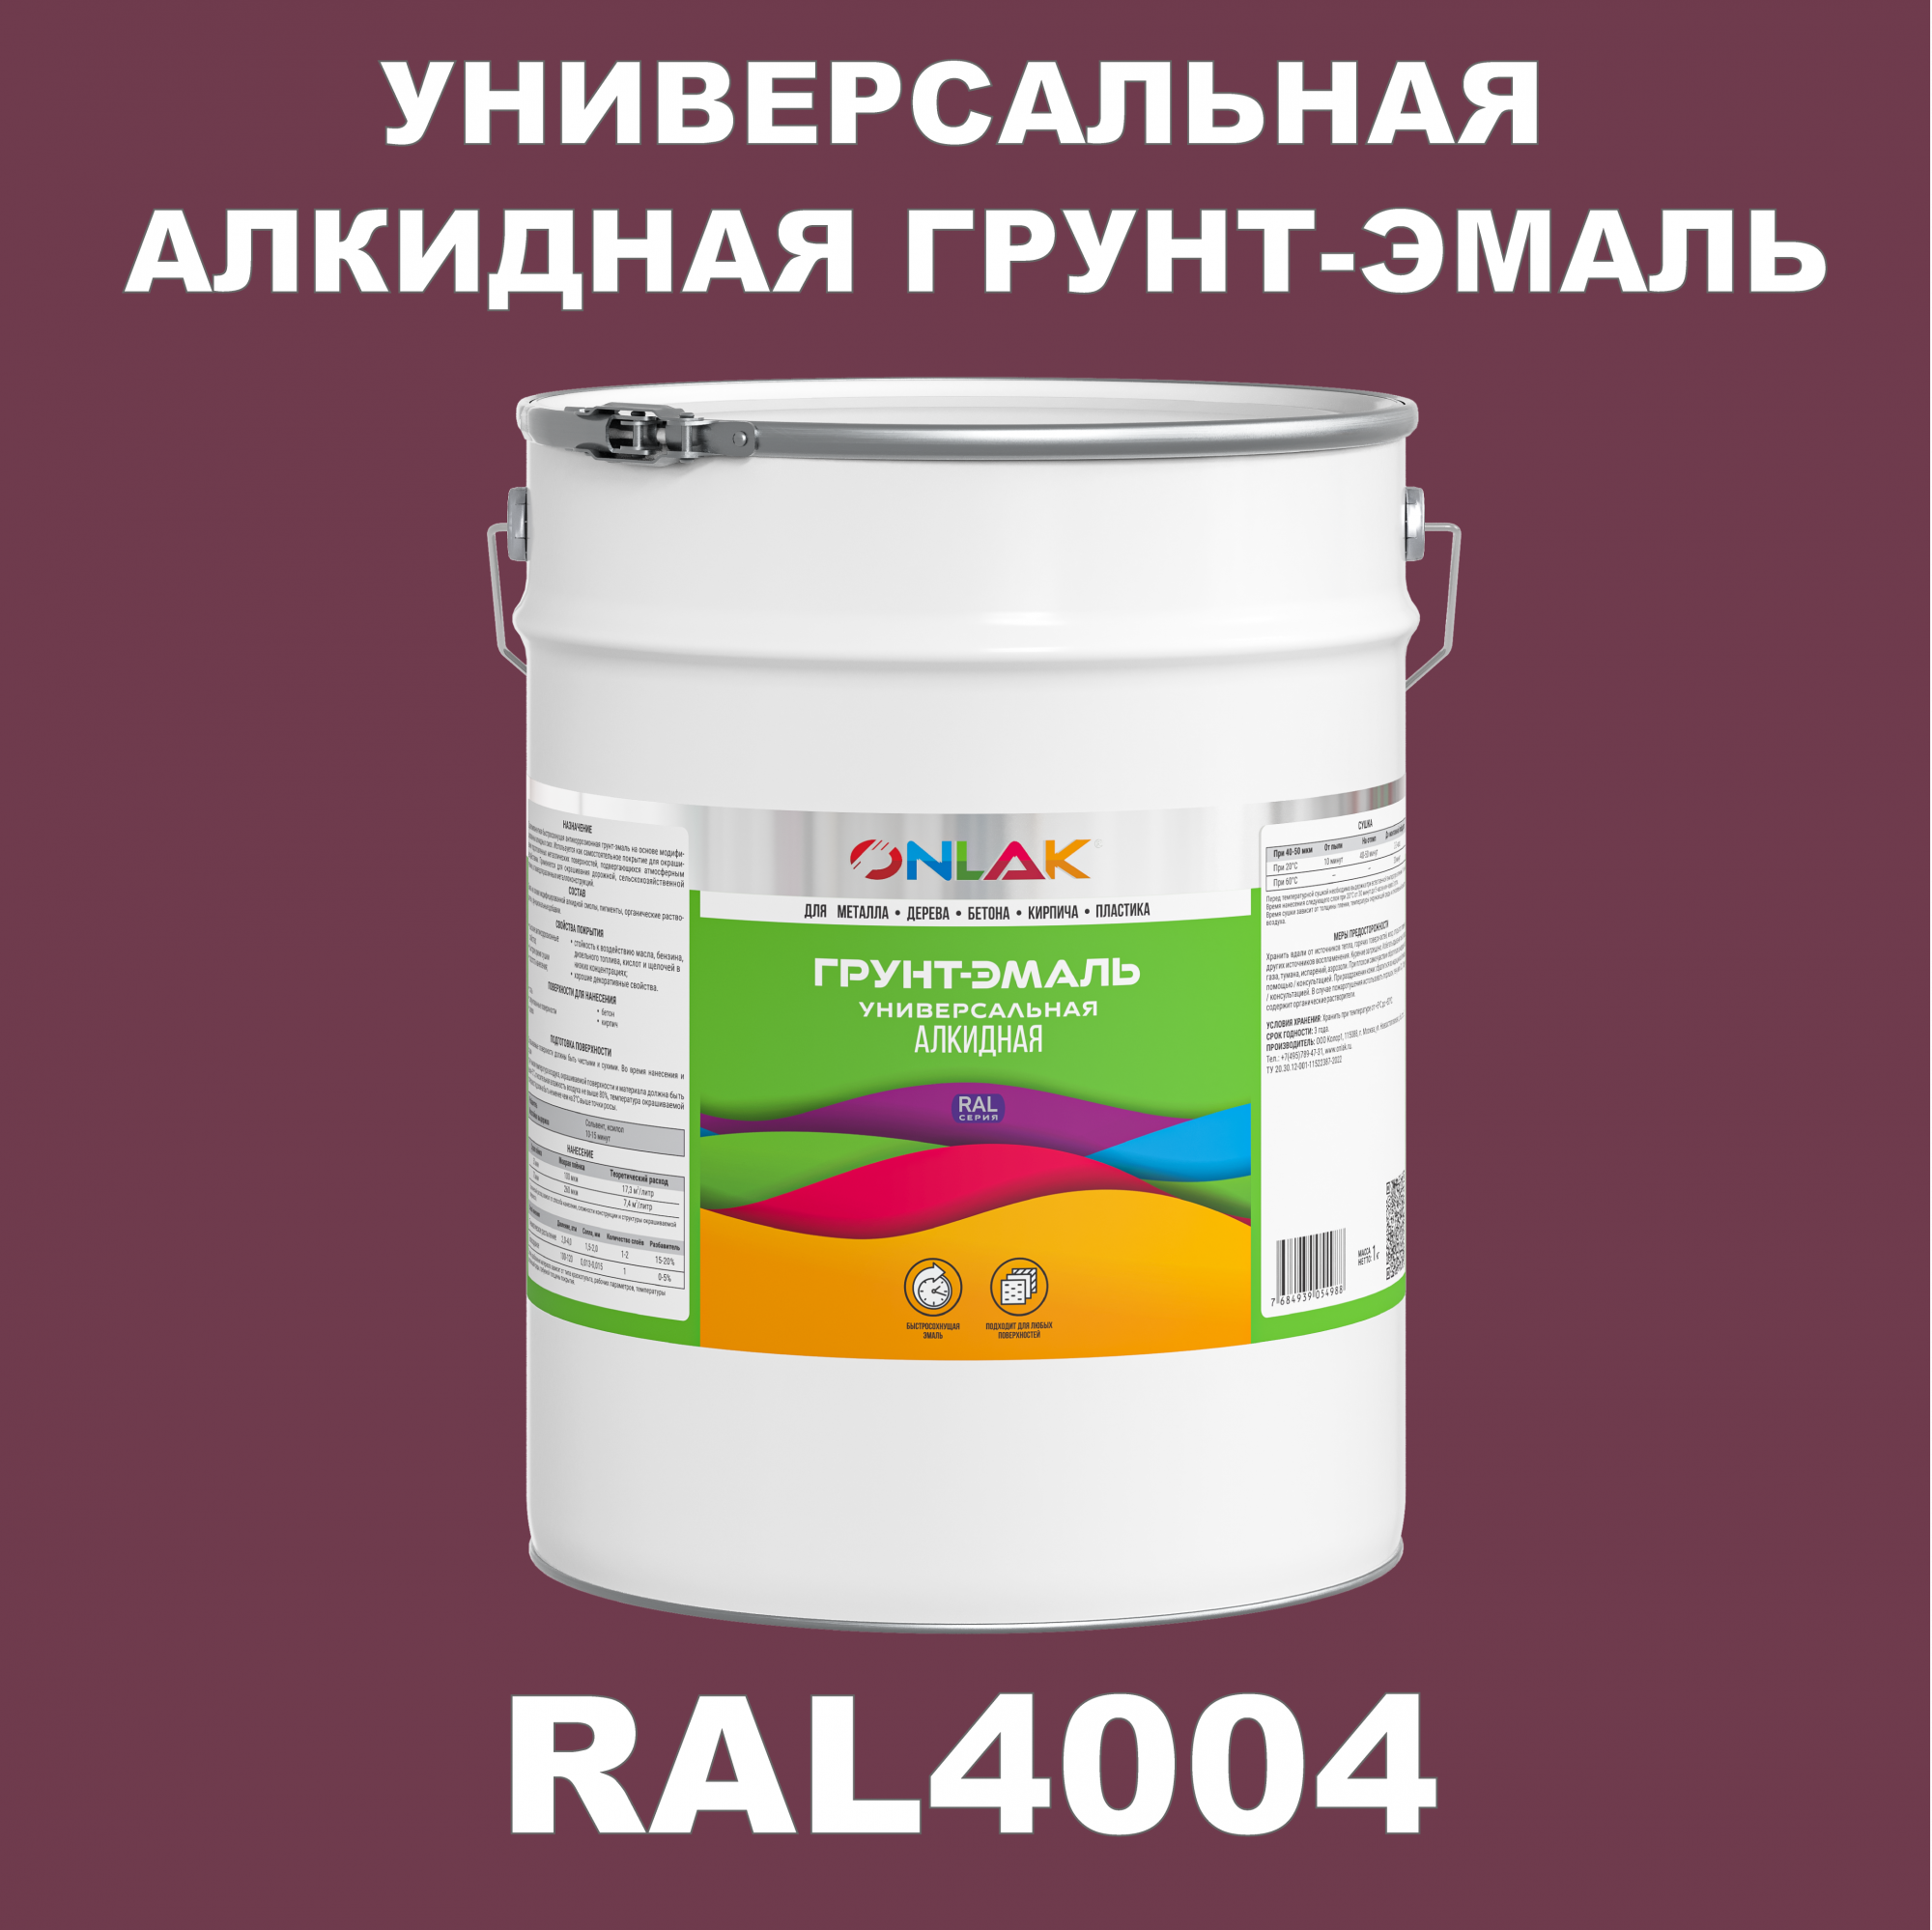 Грунт-эмаль ONLAK 1К RAL4004 антикоррозионная алкидная по металлу по ржавчине 20 кг антикоррозионная грунт эмаль onlak ral 4008 фиолетовый 610 мл